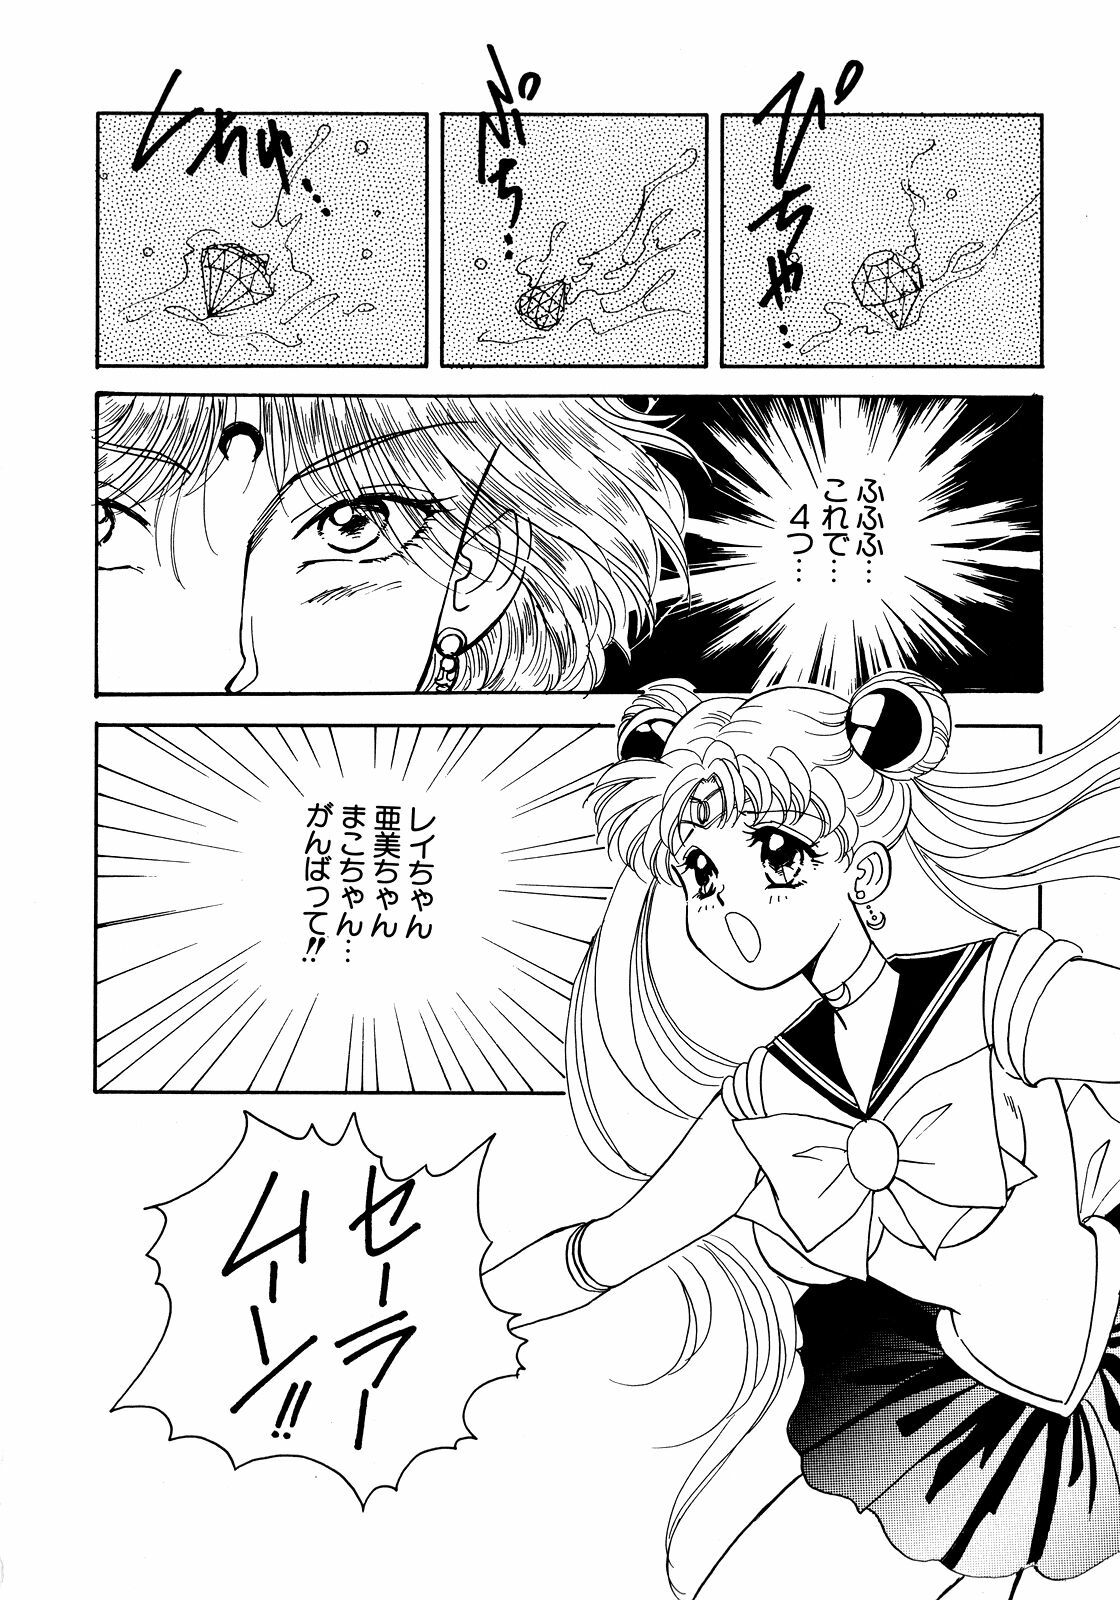 [Anthology] Lunatic Party 5 (Bishoujo Senshi Sailor Moon) page 29 full